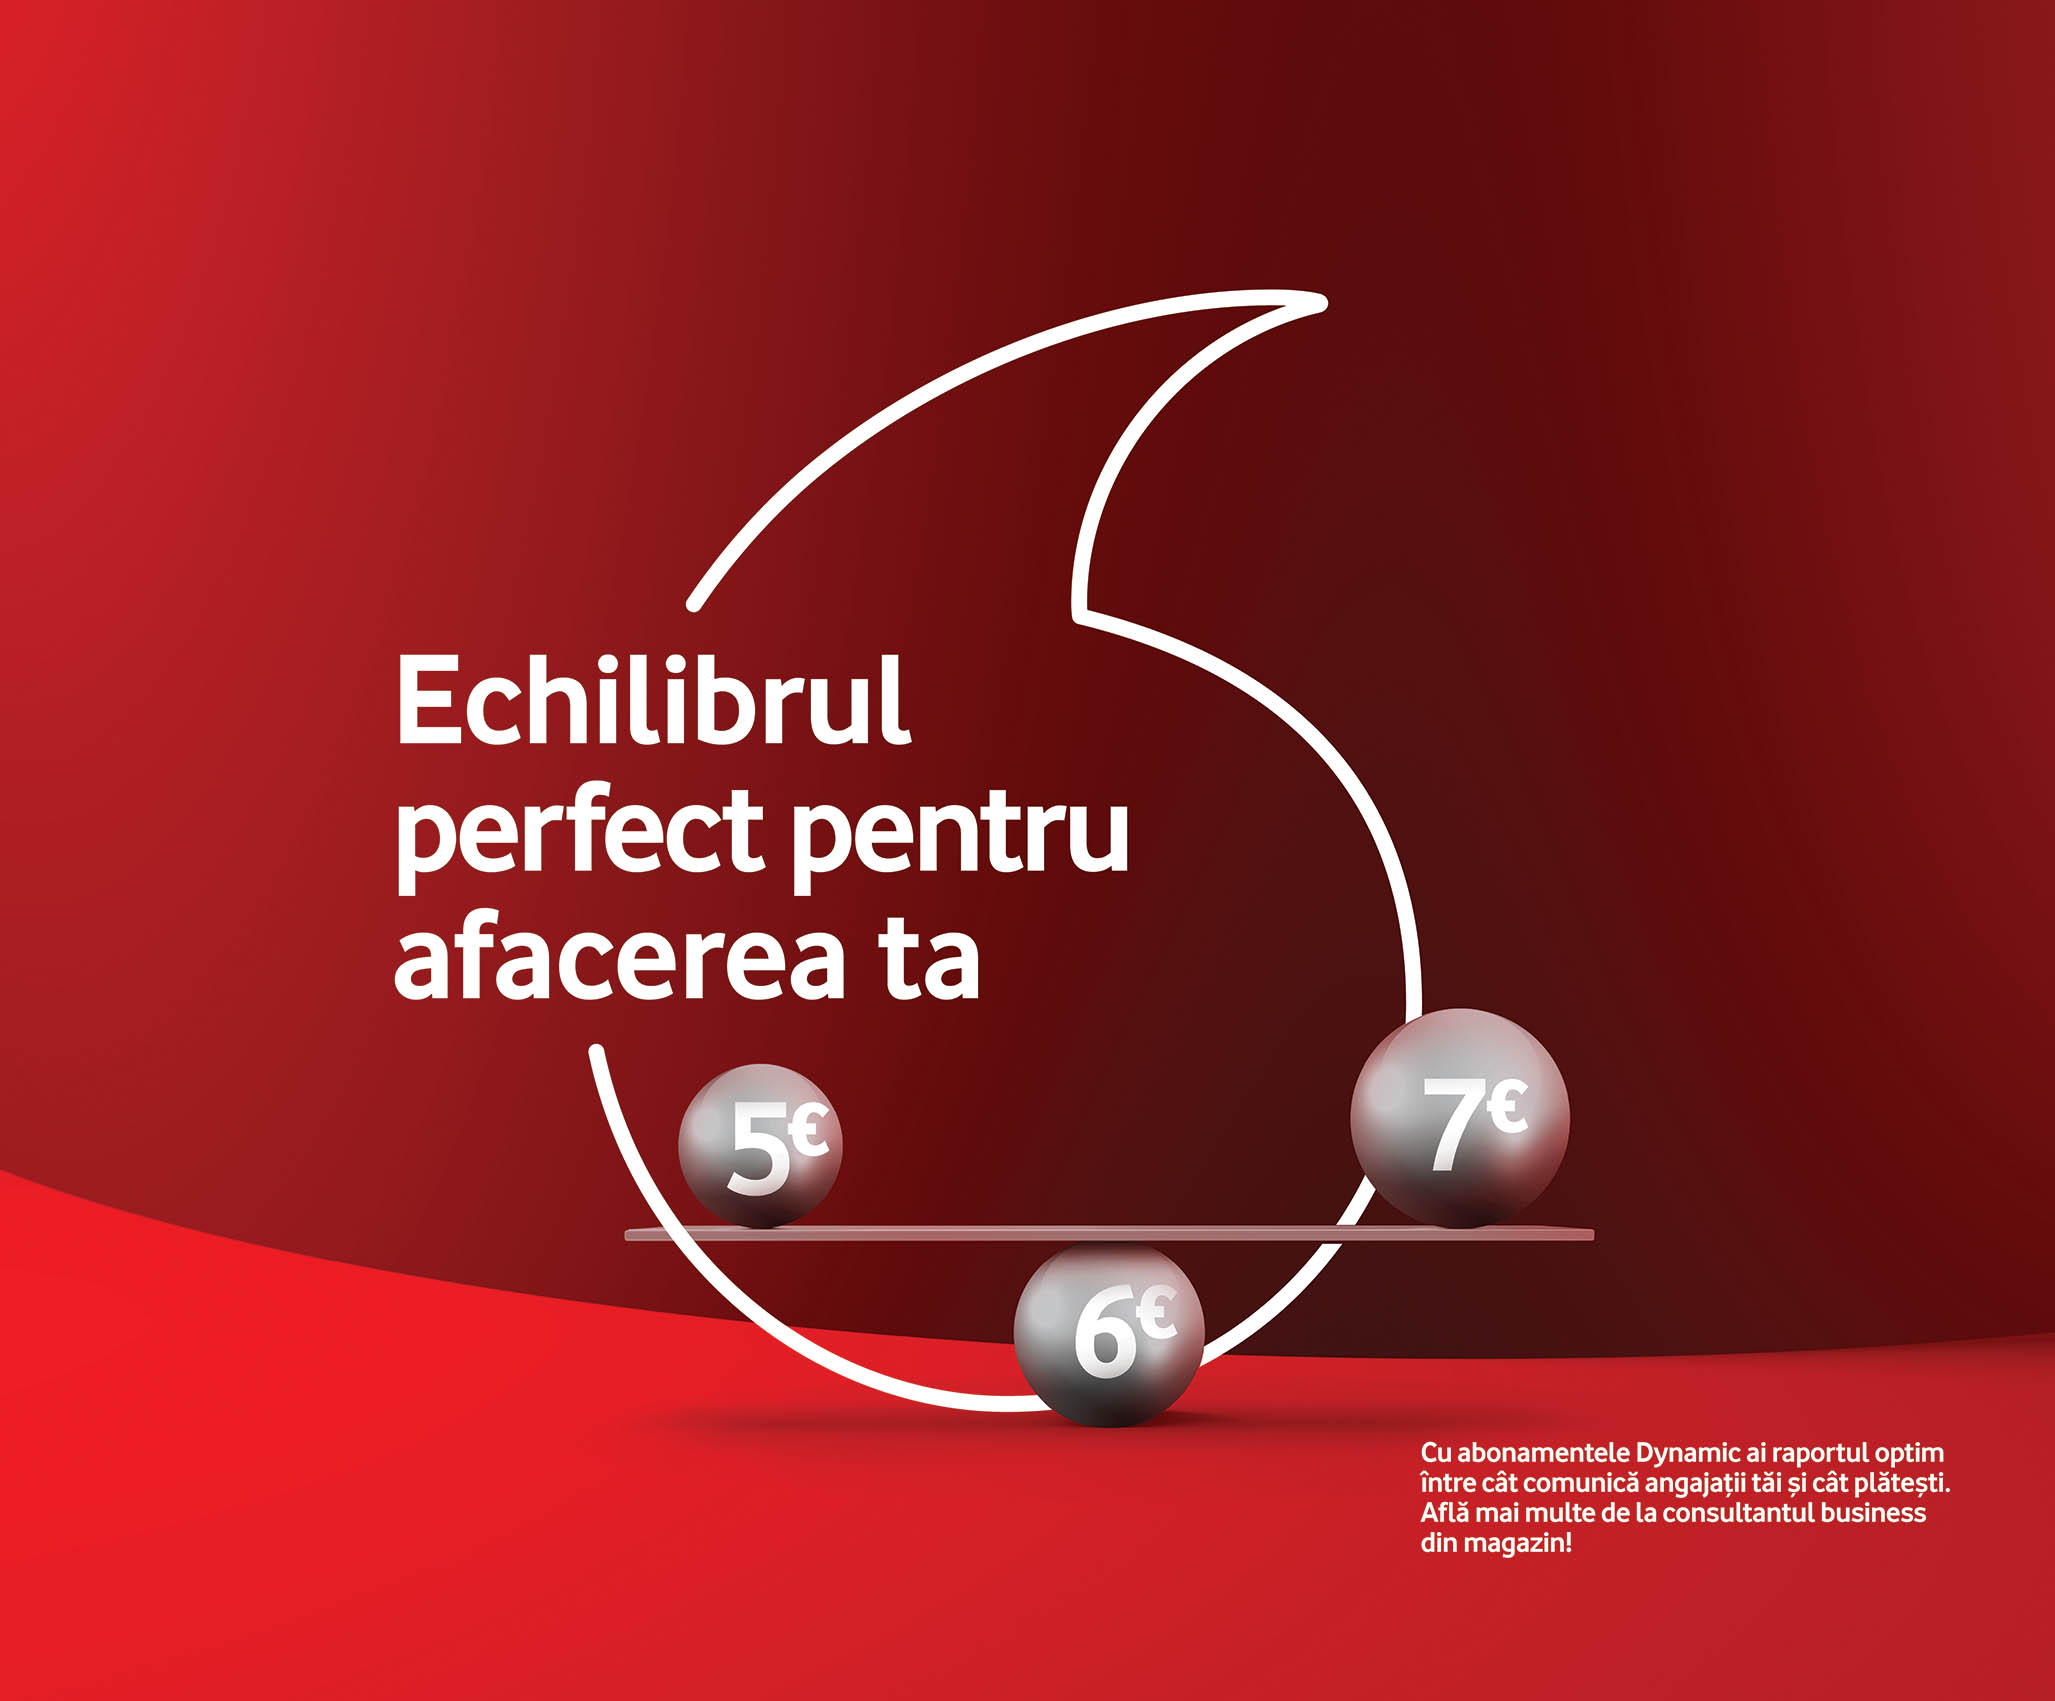 Vodafone Romania lanseaza noi abonamente ale caror costuri se adapteaza in functie de nevoile dinamice de comunicare ale companiilor